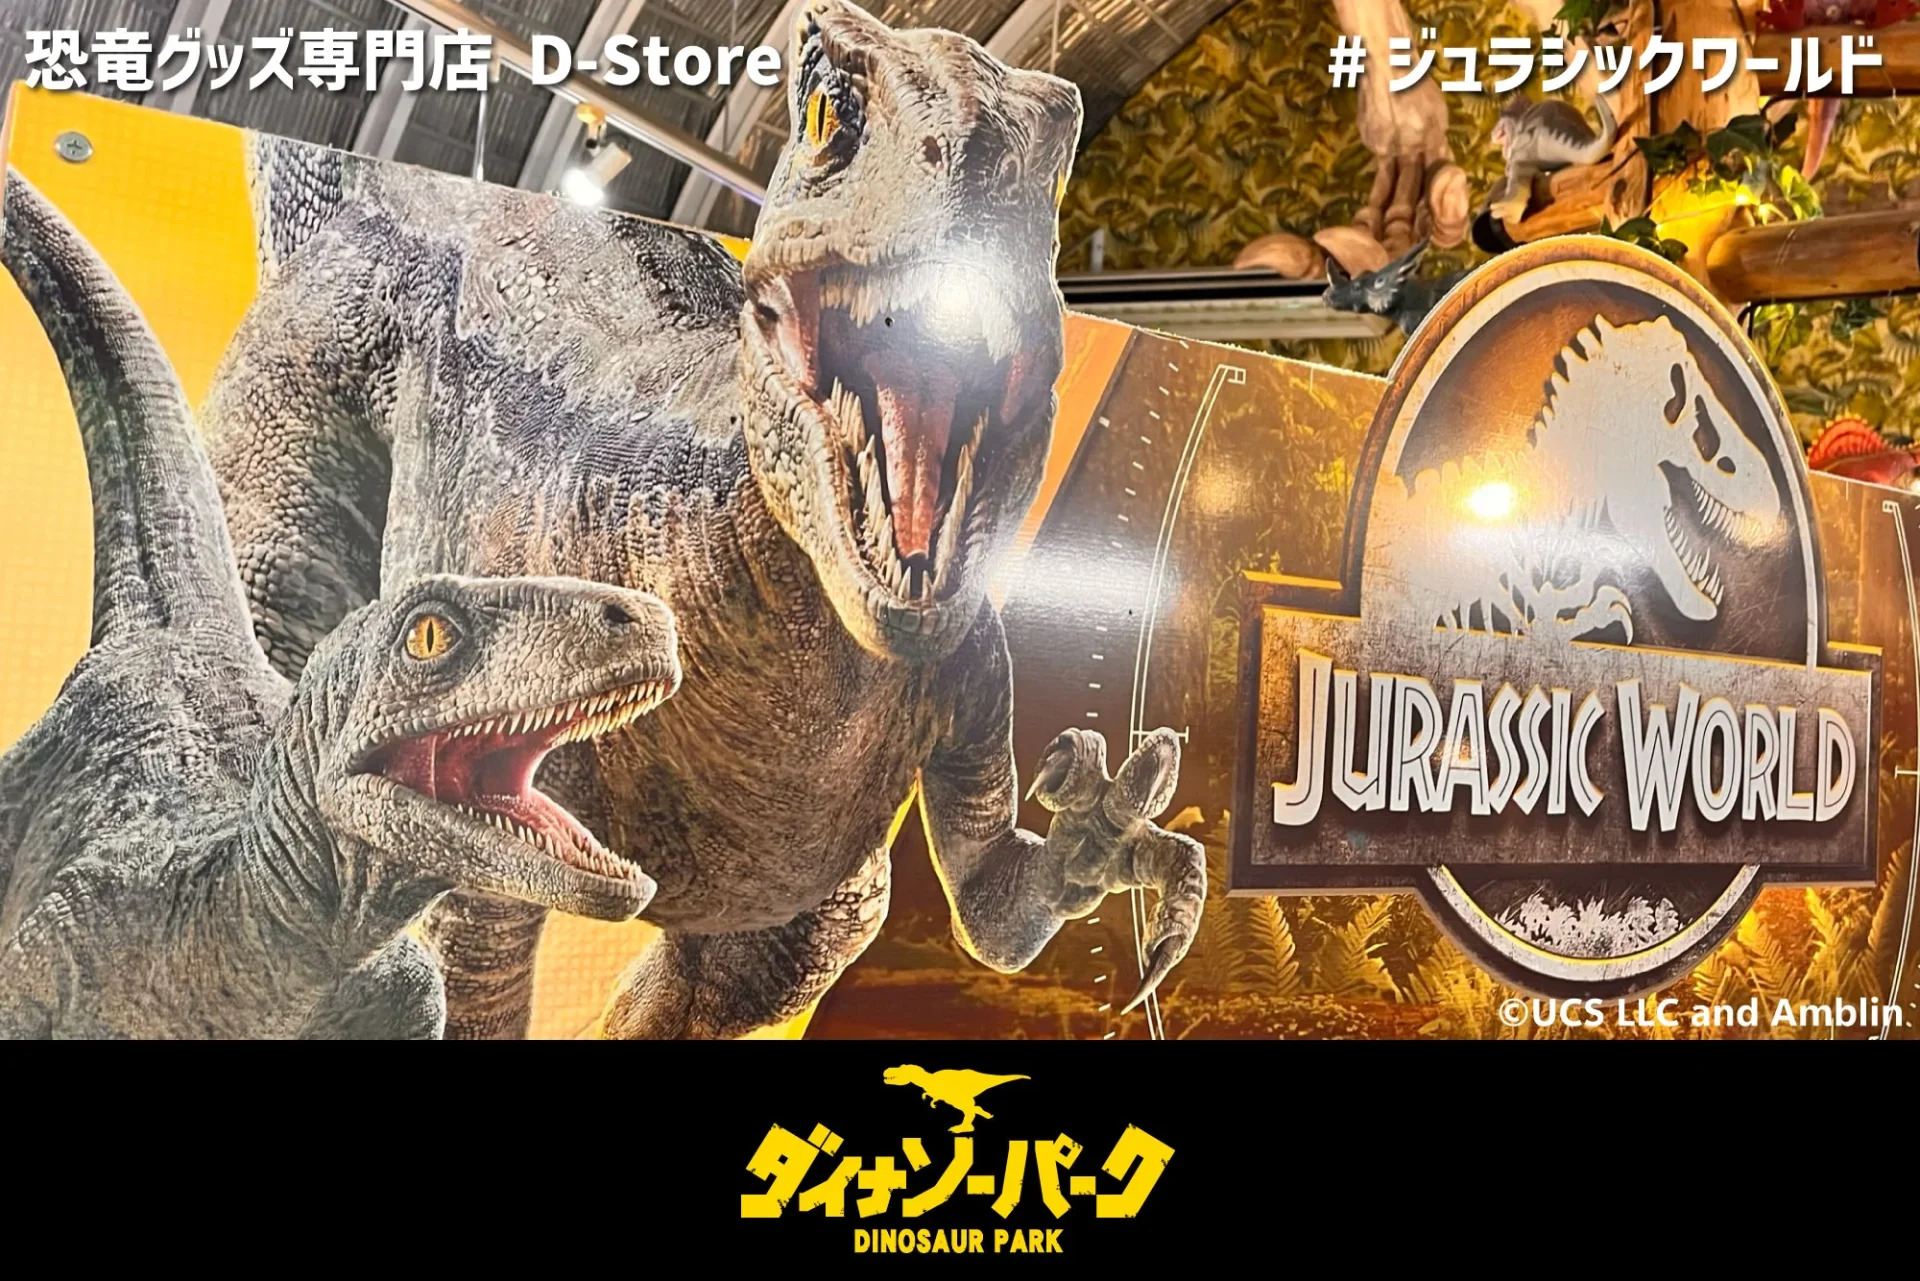 恐竜グッズ専門店D-Store